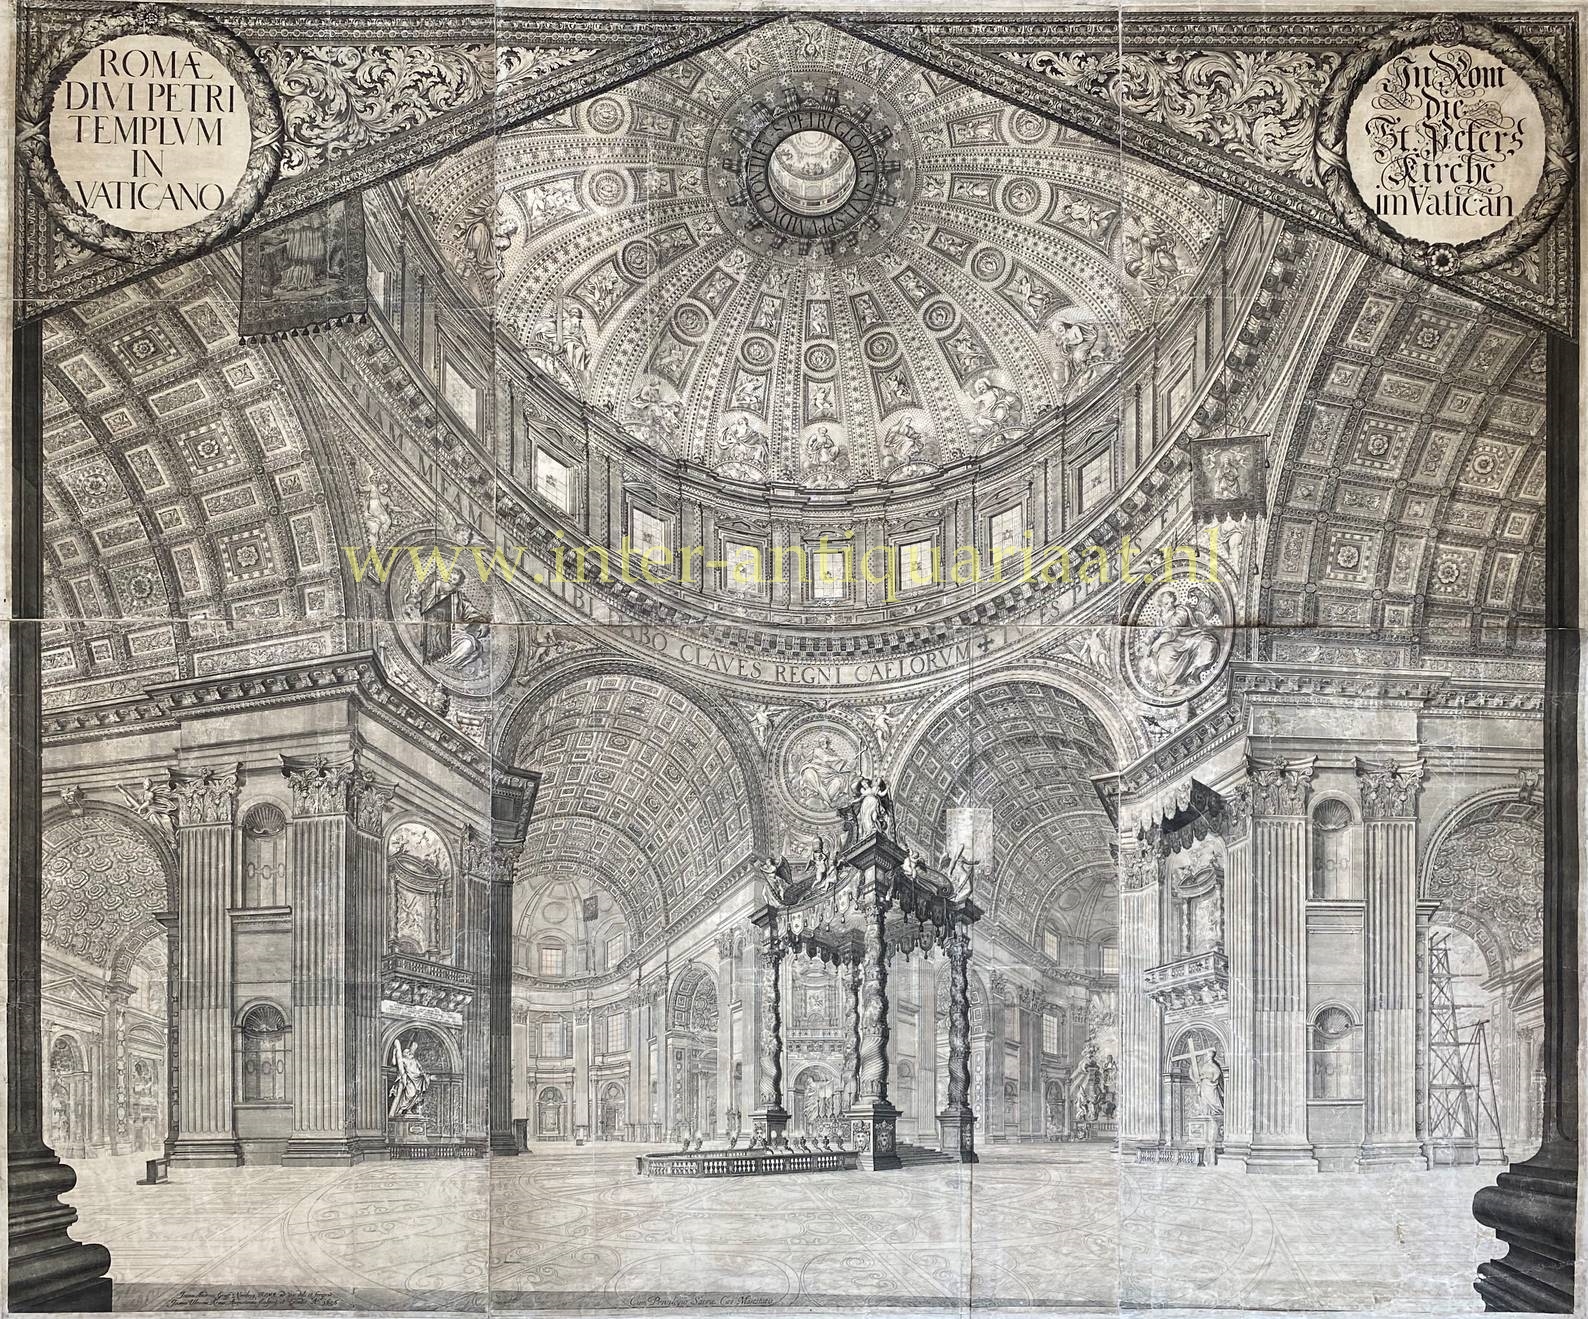  - St. Peter's Basilica interior - Johann Ulrich Kraus after Johann Andreas Graff, 1696